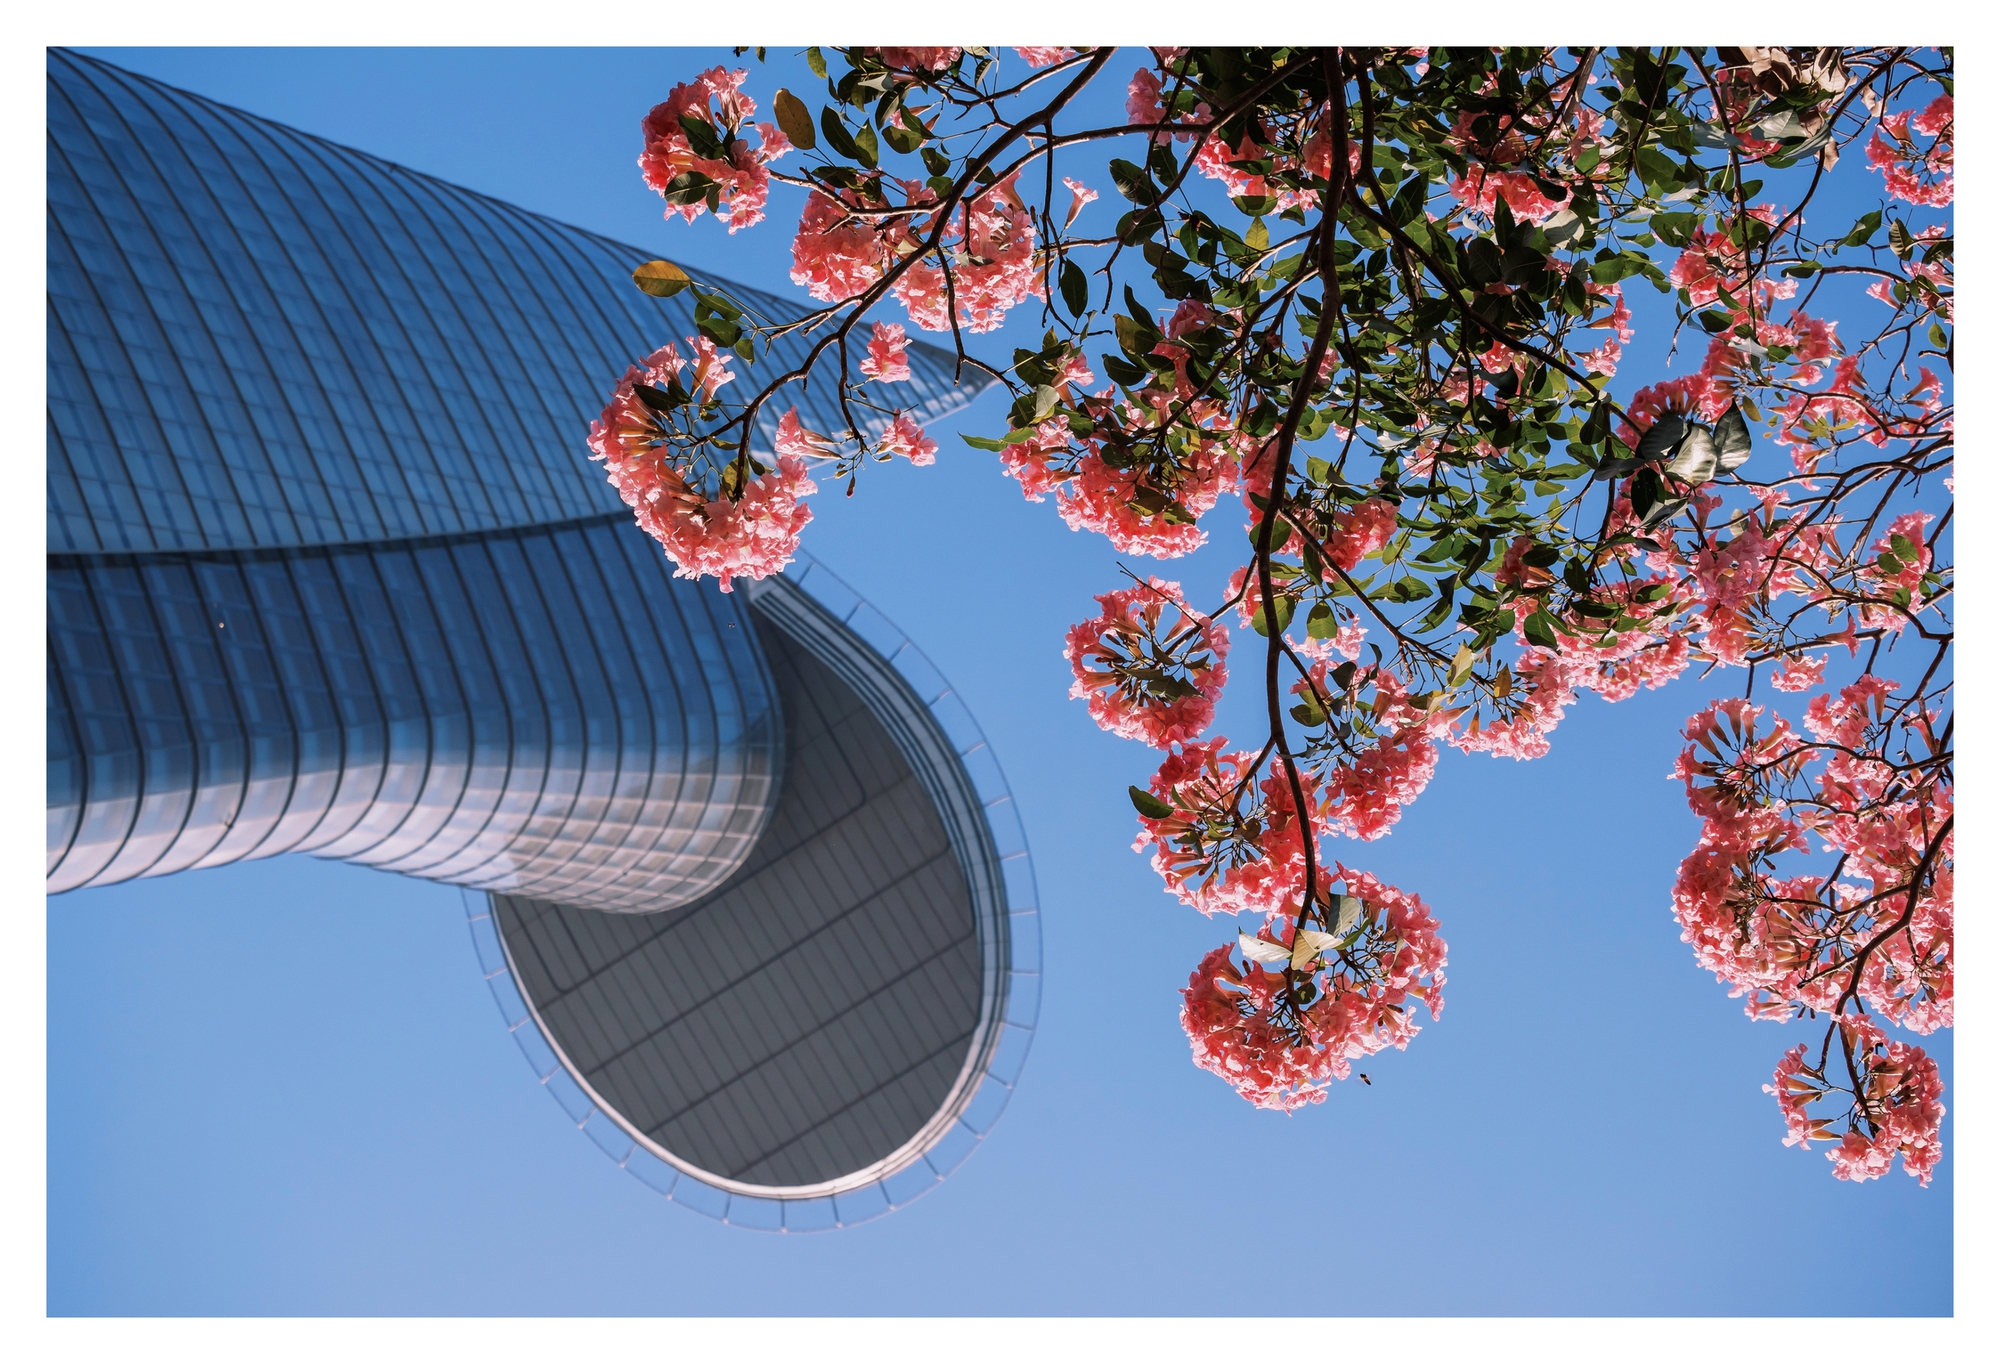 Mùa kèn hồng rợp trời Sài Gòn, chợt thấy thành phố mộng mơ biết bao giữa sắc hoa rực rỡ- Ảnh 9.